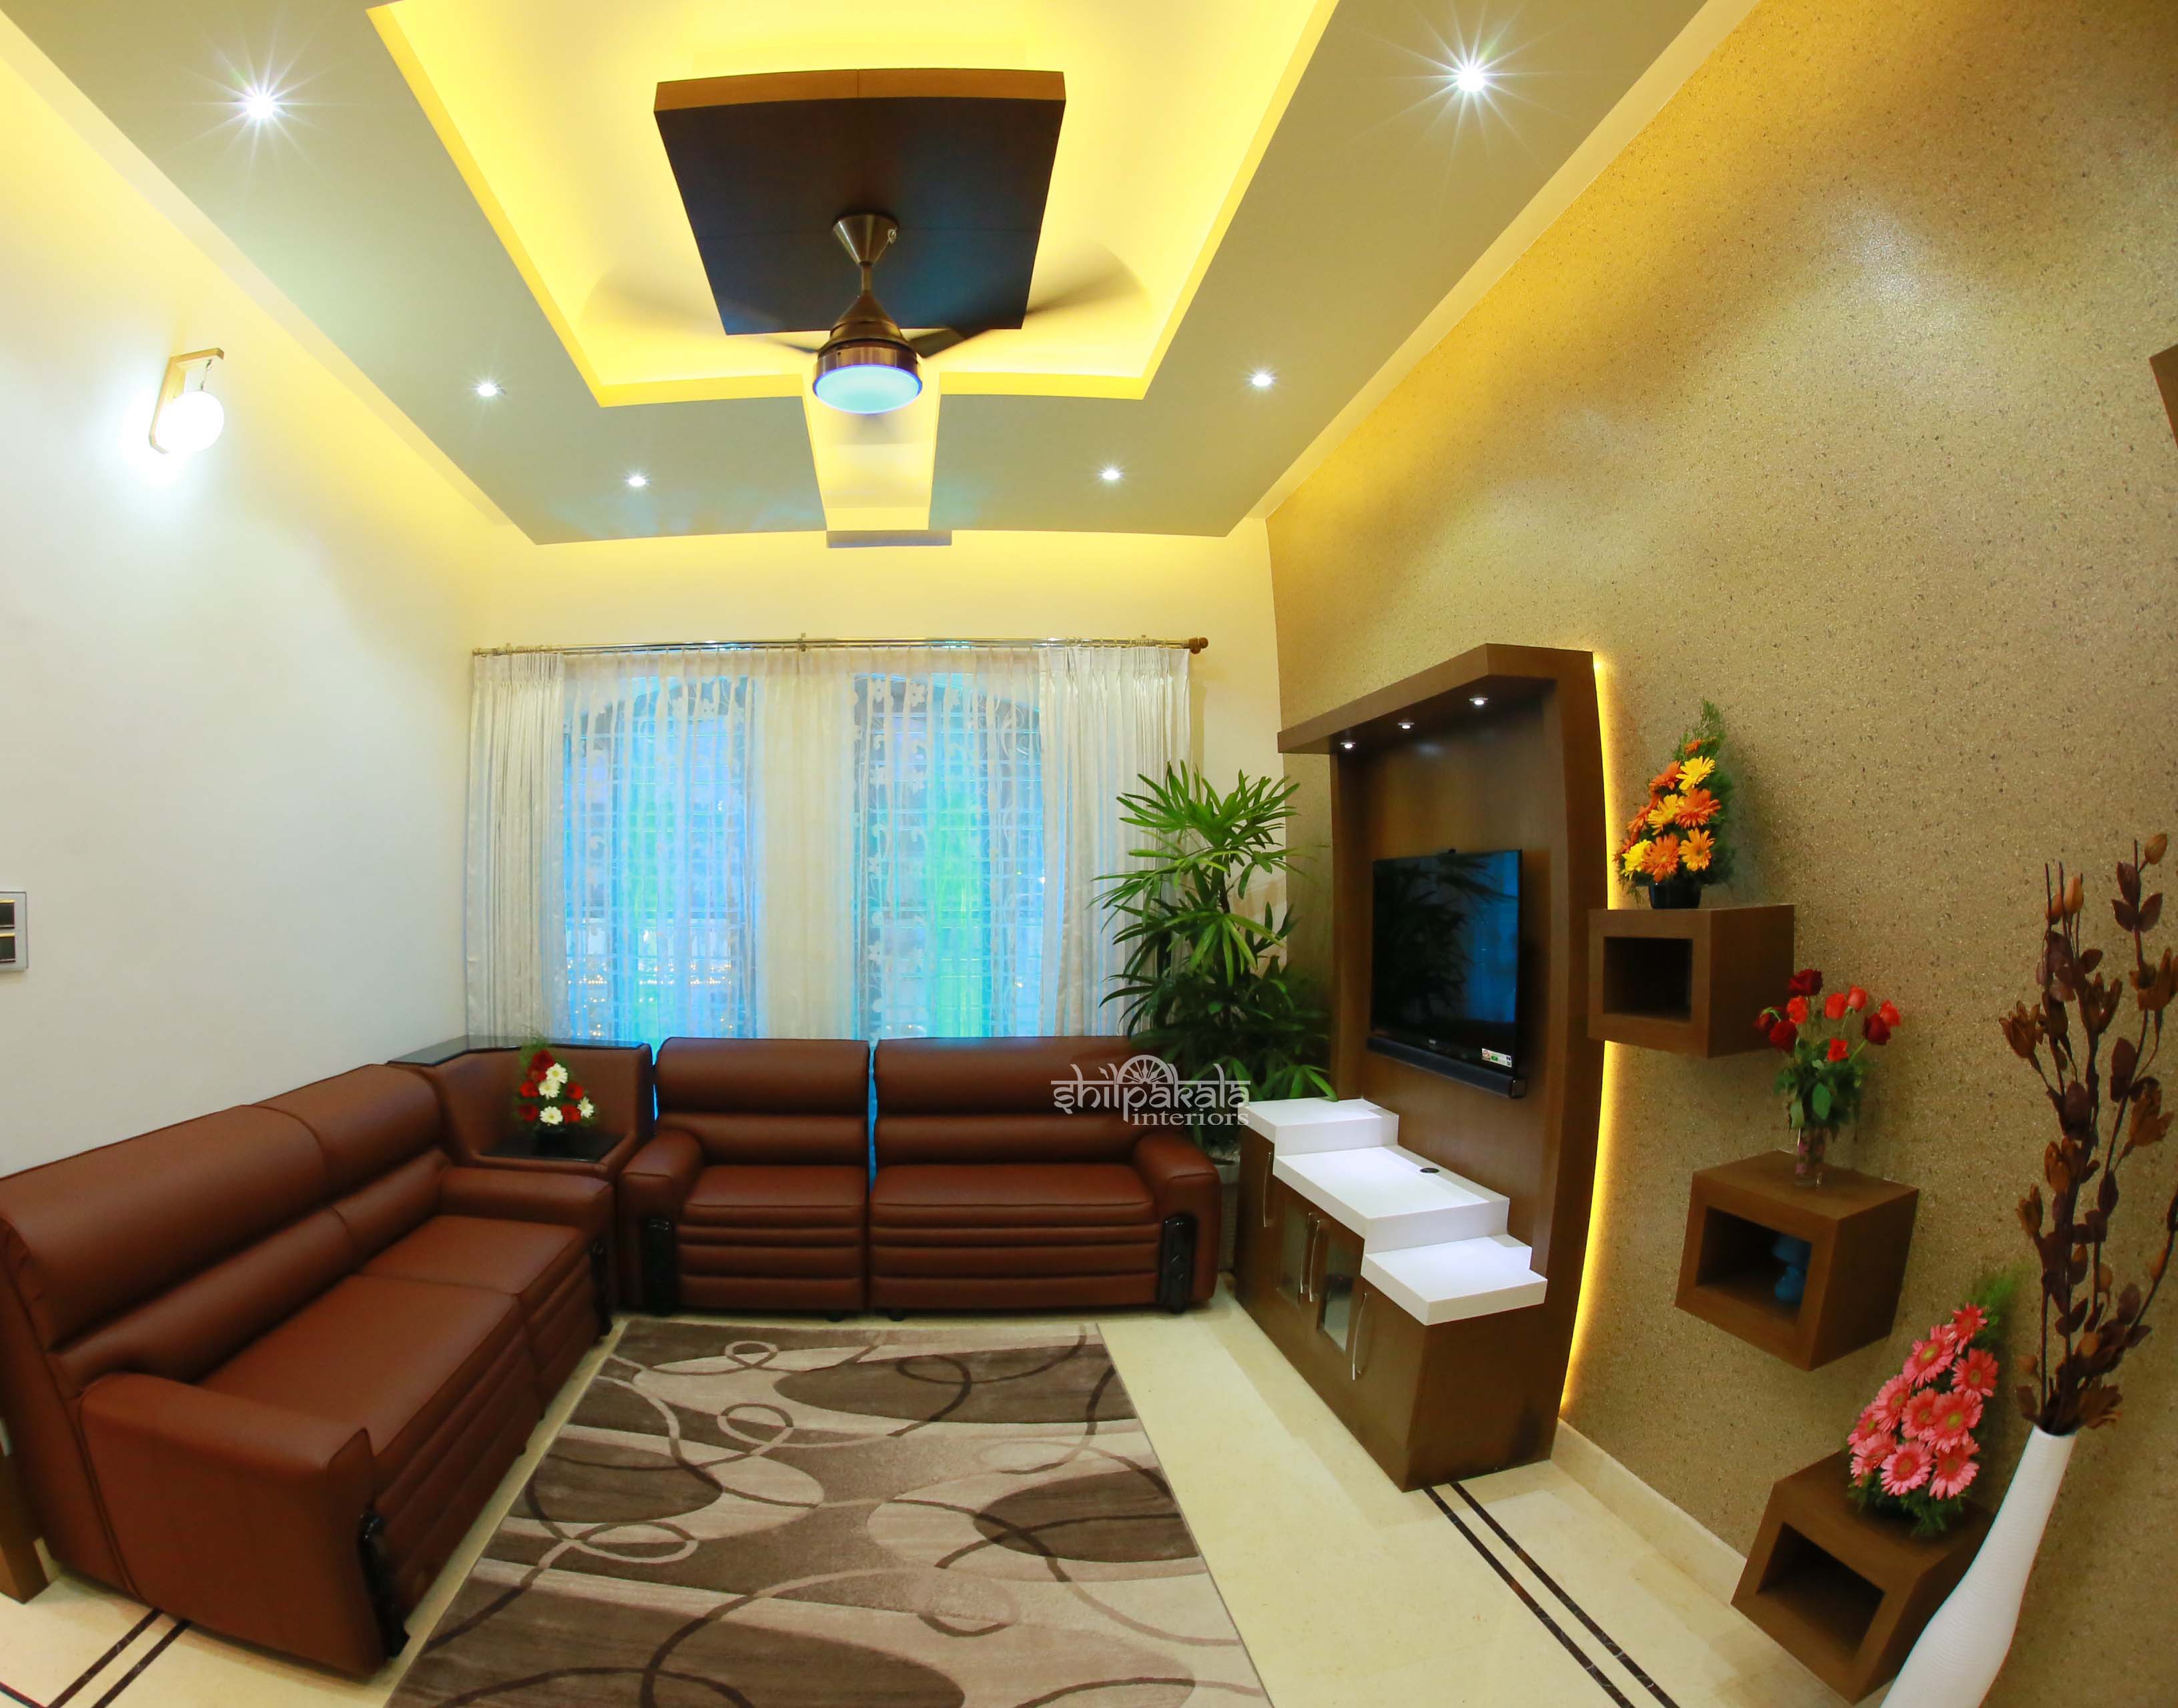 Living Room Ideas Kerala Homes - jihanshanum